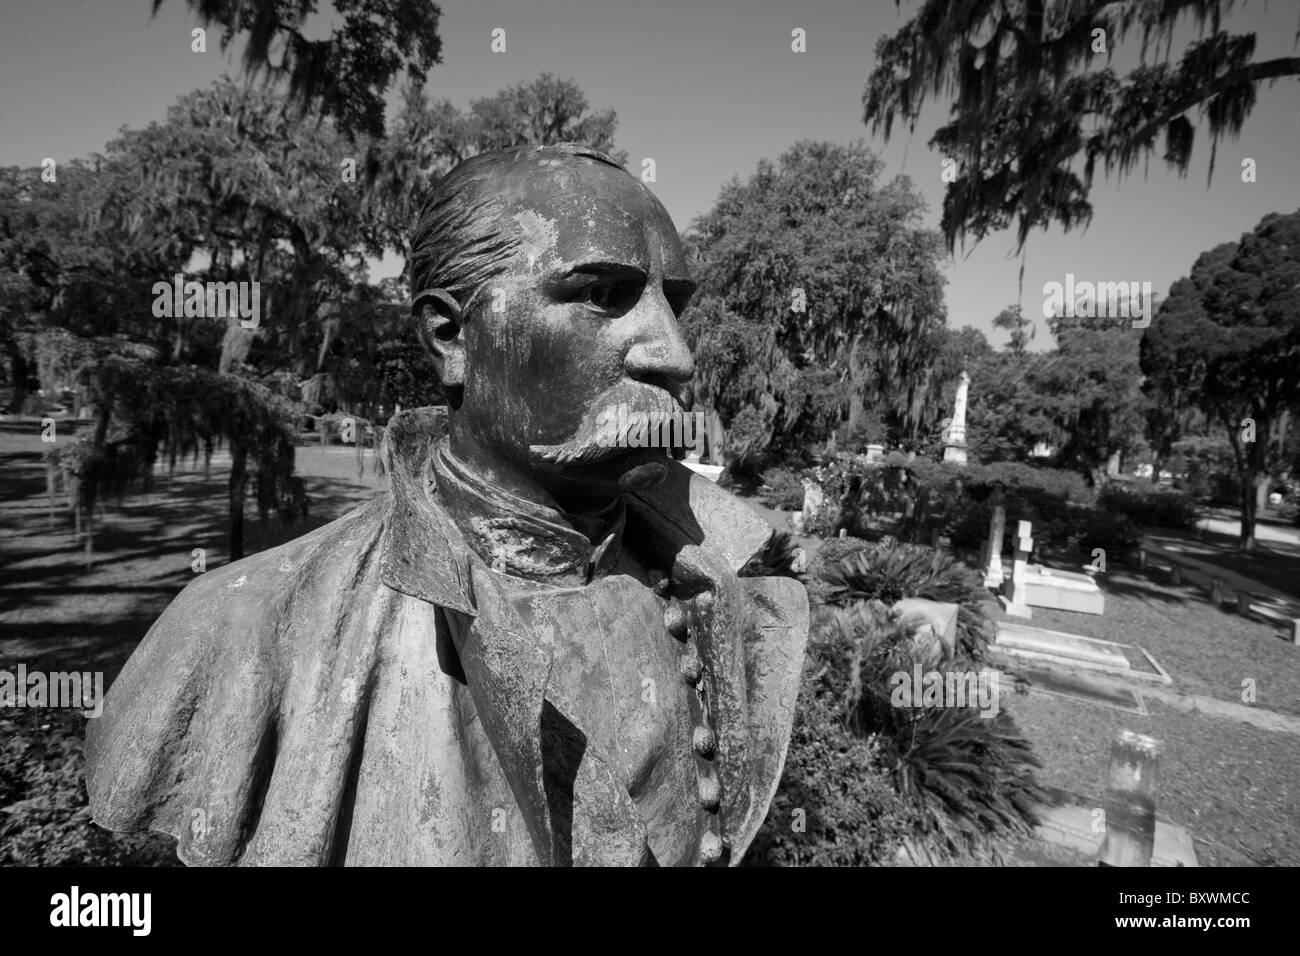 Stati Uniti d'America, Georgia, savana, cimitero statua del generale confederato Robert H. Anderson sotto alberi drappeggiati in muschio Spagnolo Foto Stock